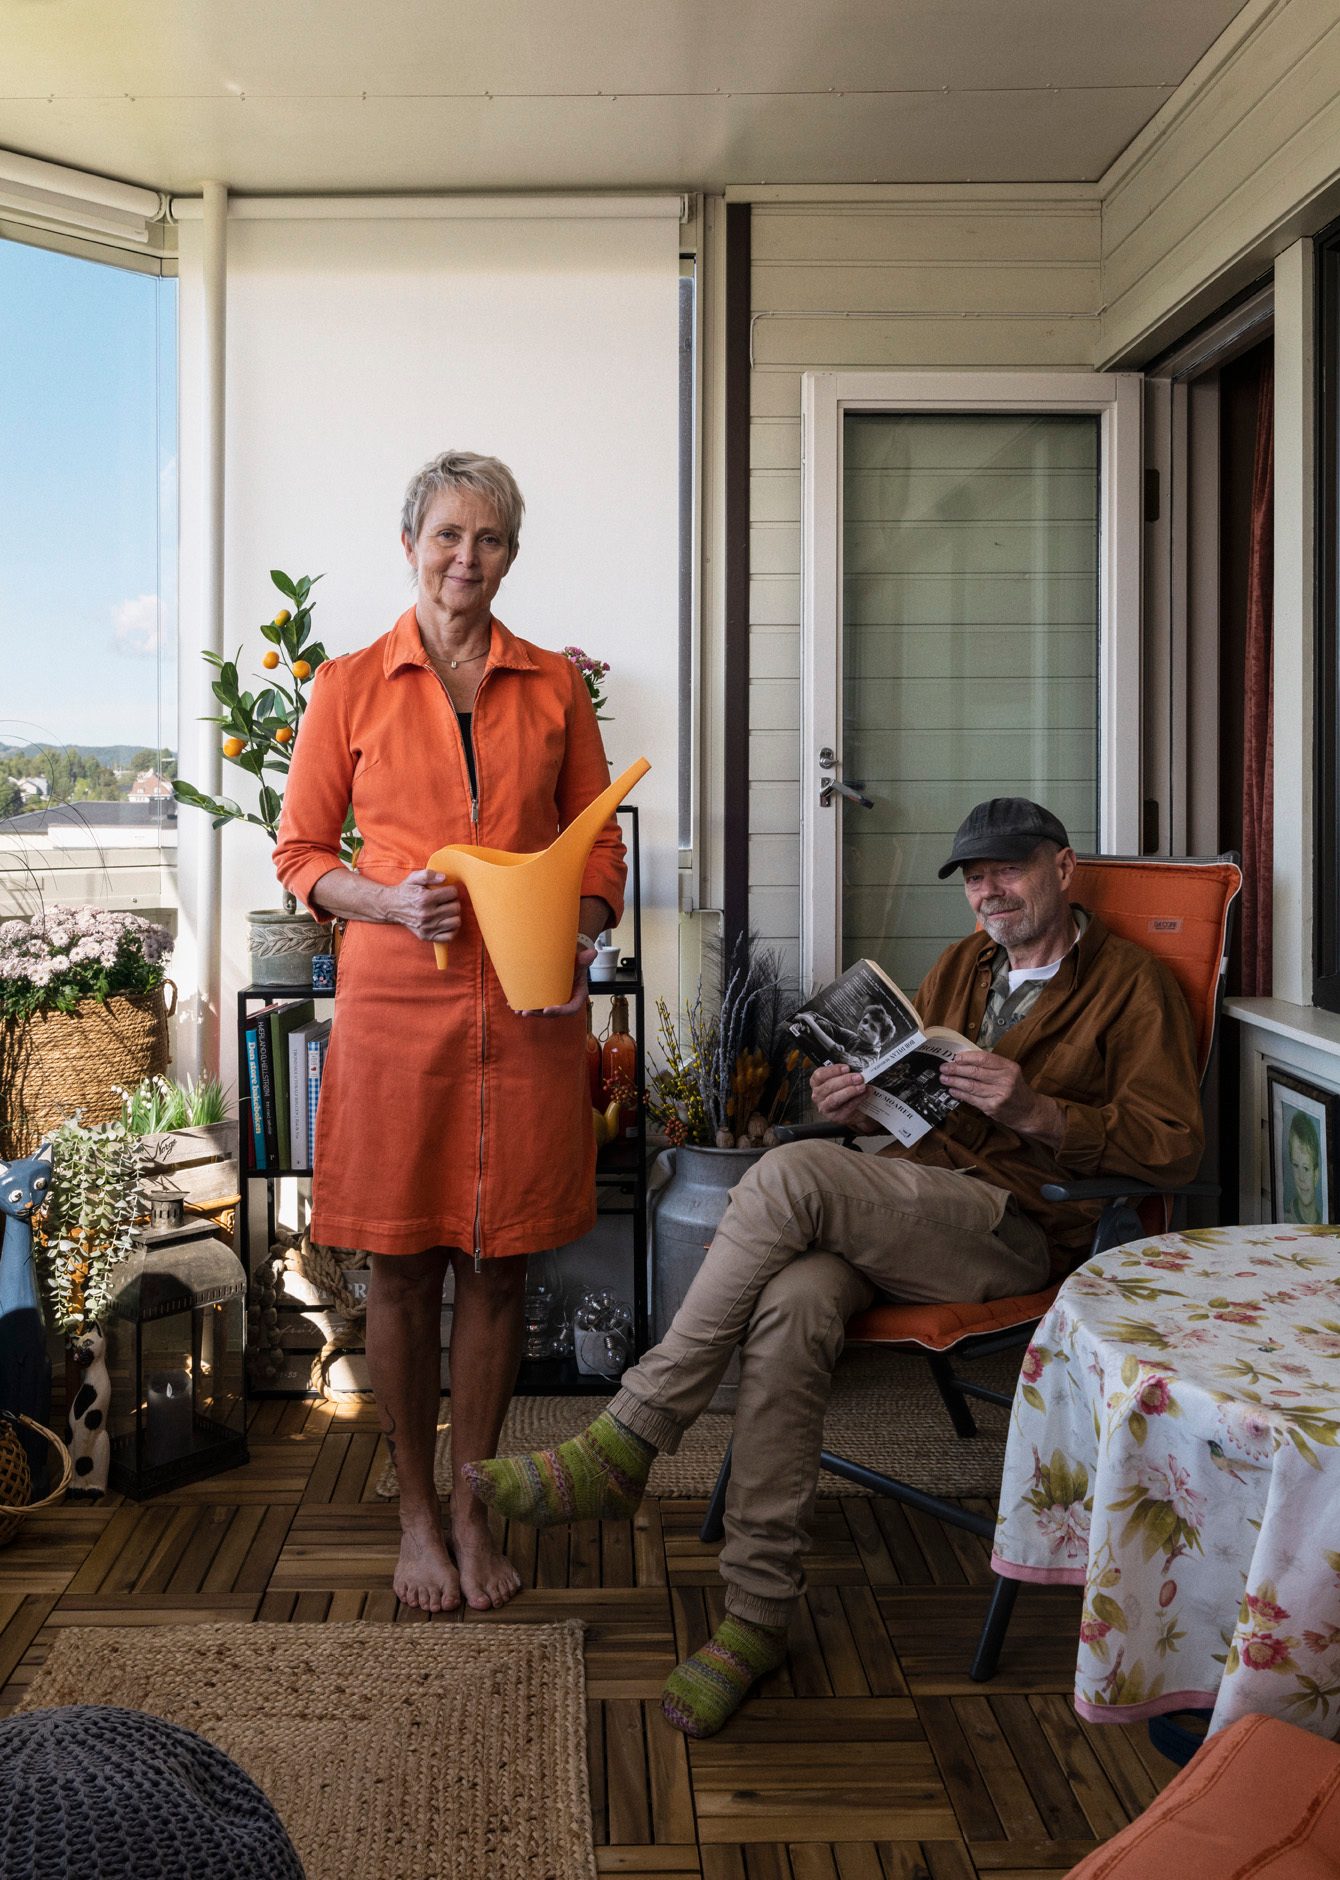 En kvinne st&#xE5;r i oransje kjole med en oransje vannkanne p&#xE5; en innglasset veranda. Ved siden av henne sitter en mann med caps og ullsokker og leser en bok om Bob Dylan.